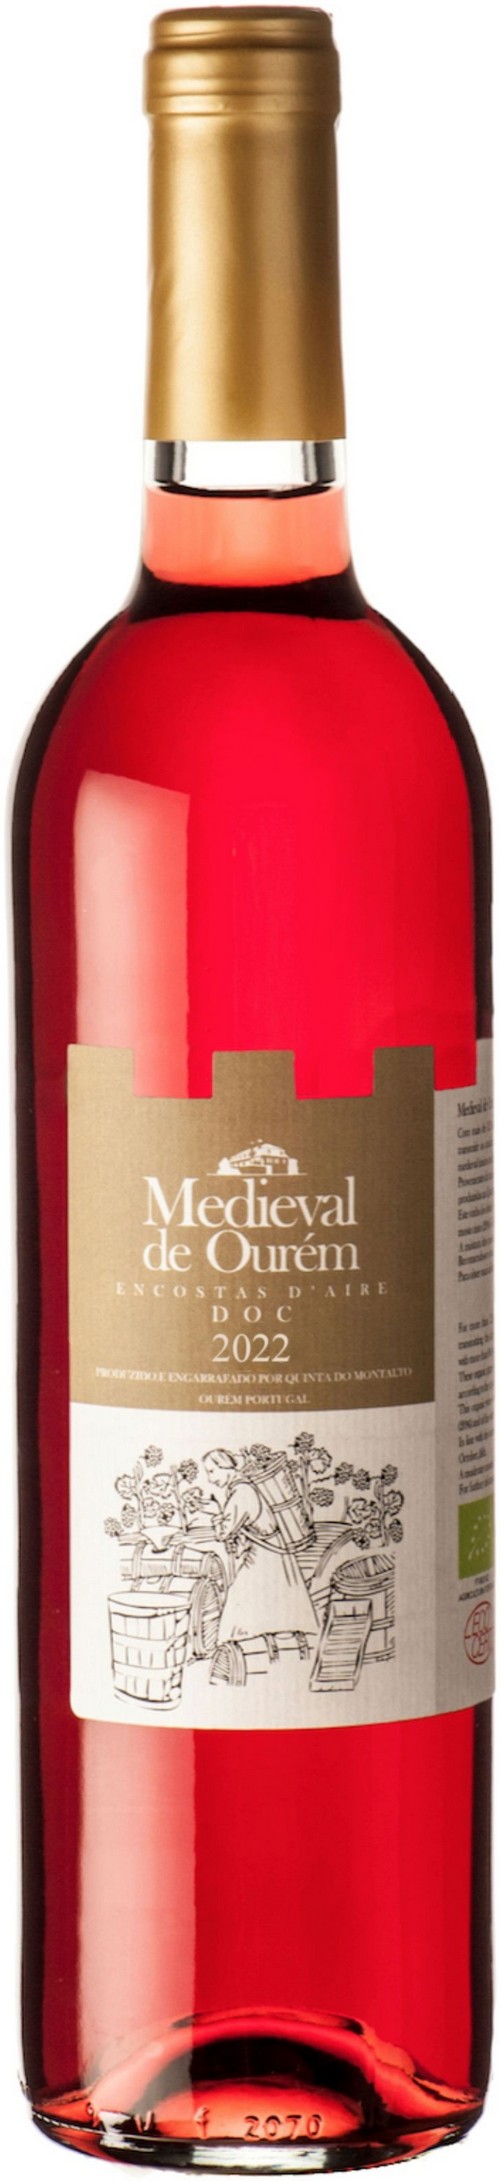 vinho-medieval-de-ourem-2022